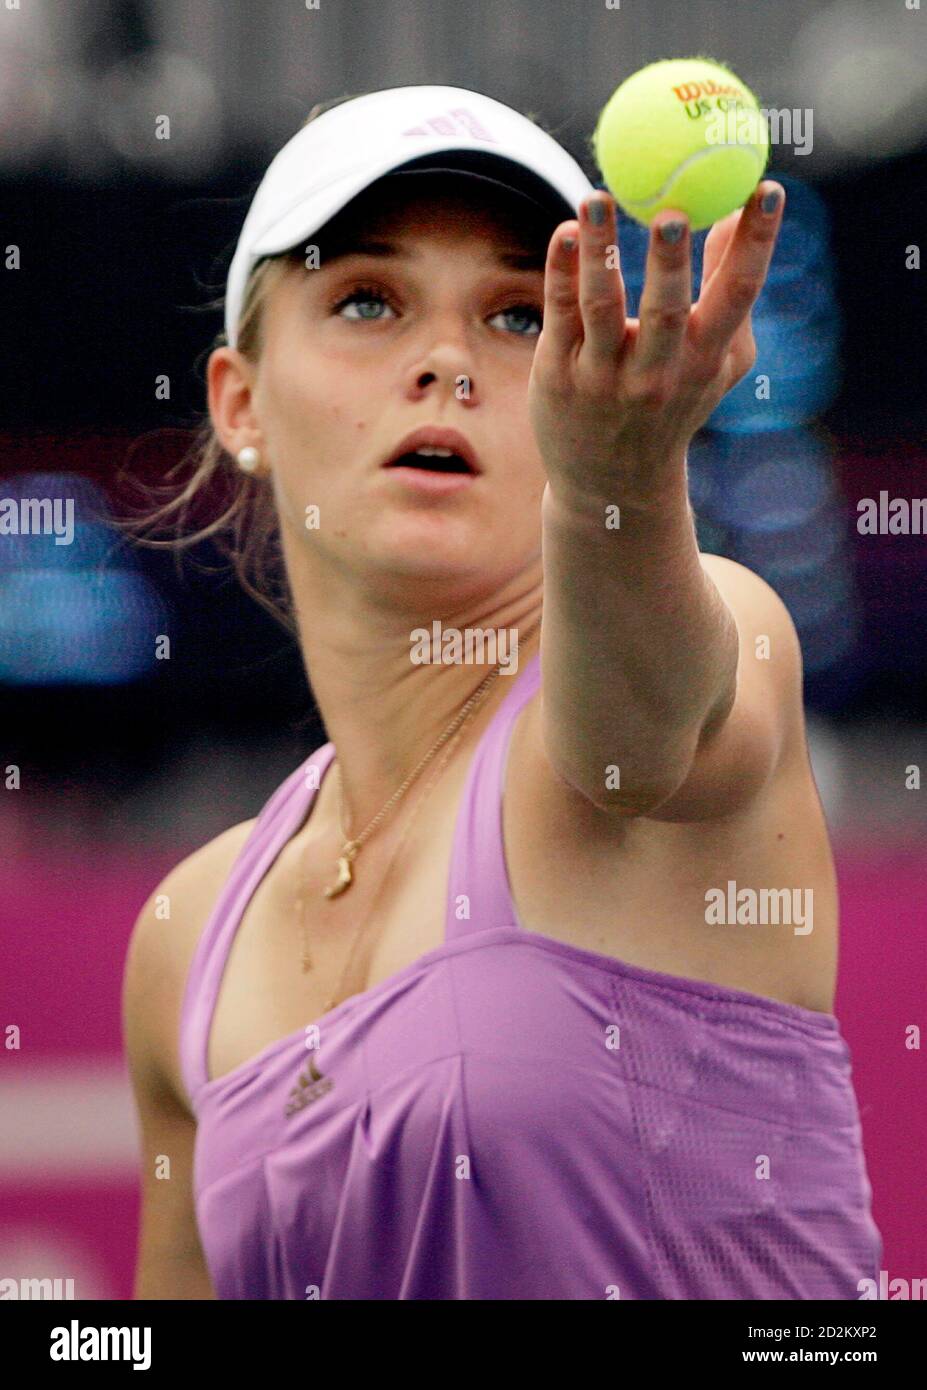 Anna Chakvetadze Russlands dient, Vania King der Vereinigten Staaten während ihrer Fed-Cup-Halbfinale-Tennis-Match in Stowe, Vermont 14. Juli 2007.   REUTERS/Brian Snyder (USA) Stockfoto